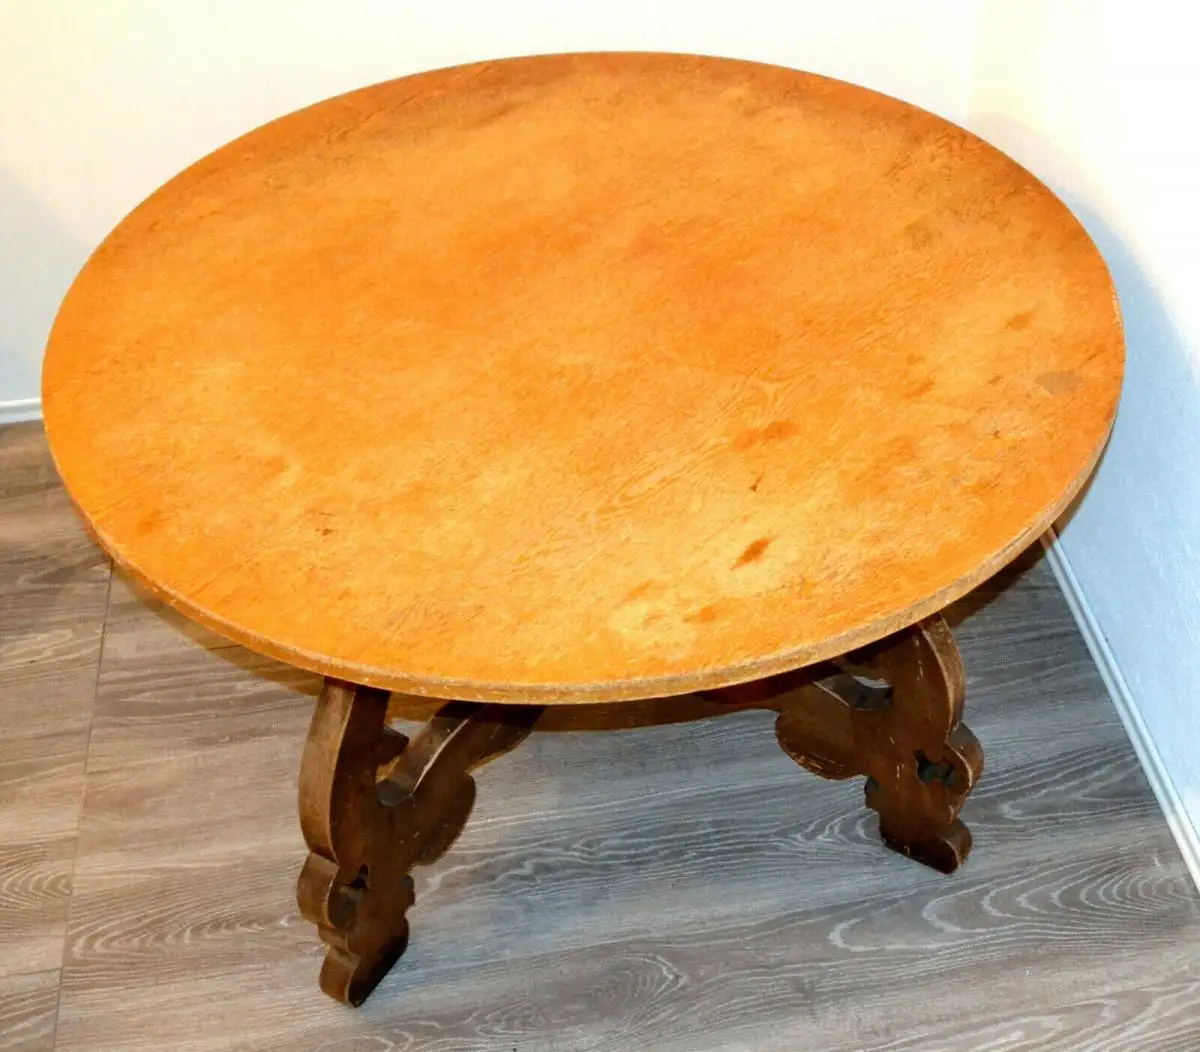 Möbel,runder Bauerntisch, alter Barockfuss, neue Platte,für Restaurator/Bastler 6